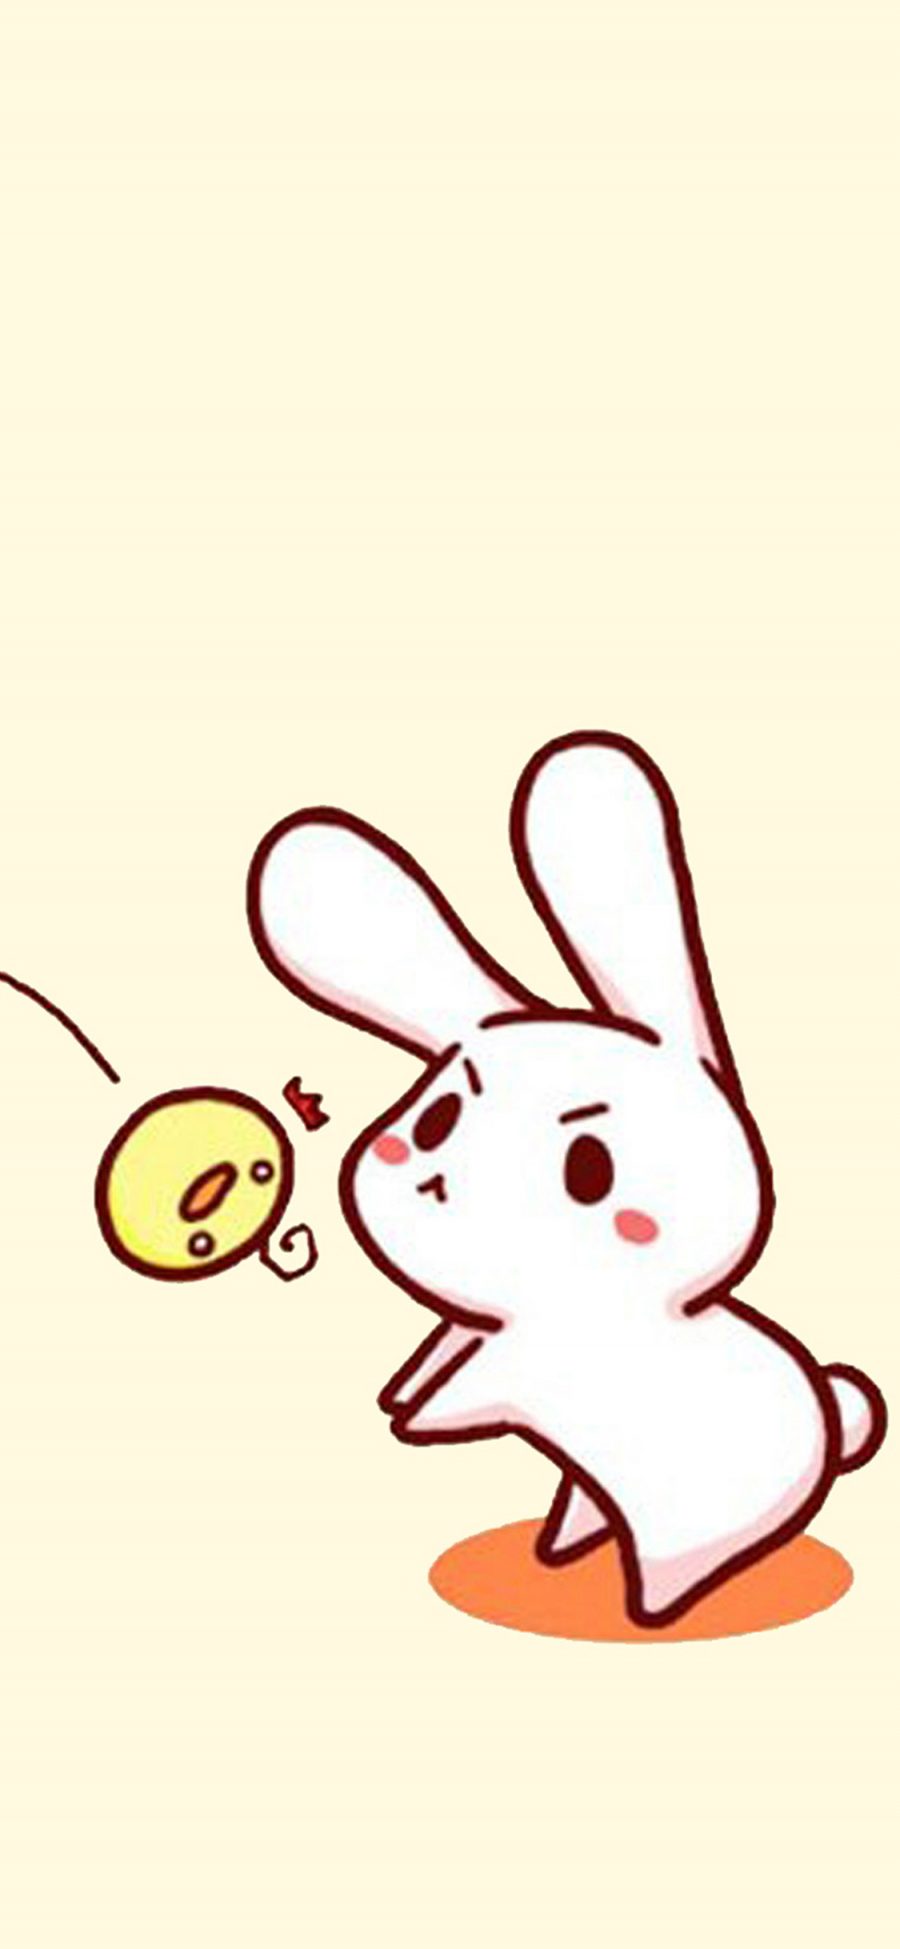 [2436×1125]兔子 手绘 简约 黄 苹果手机动漫壁纸图片